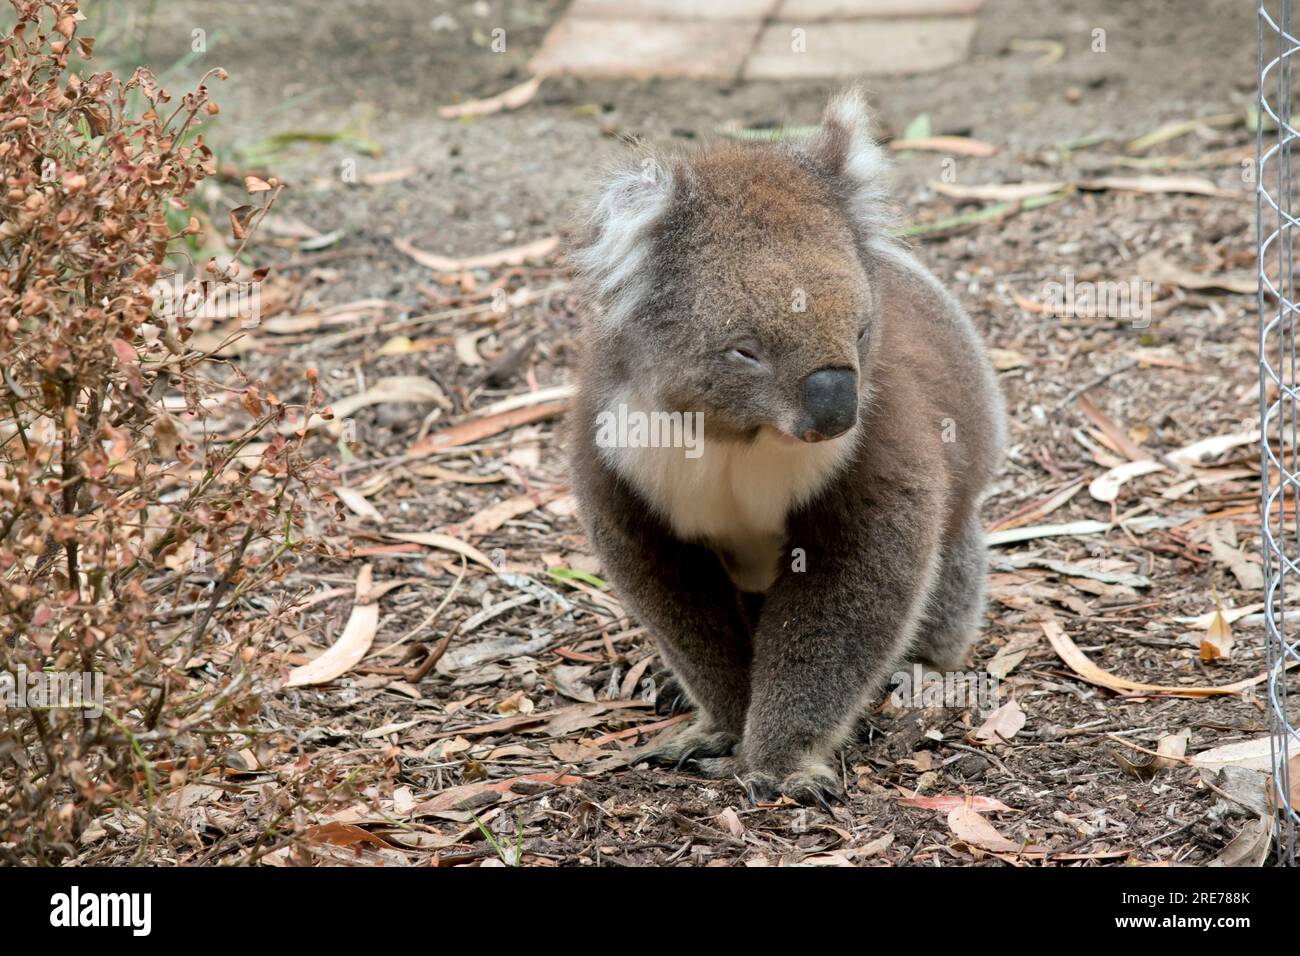 Der Koala hat einen großen runden Kopf, große pelzige Ohren und große schwarze Nase. Stockfoto